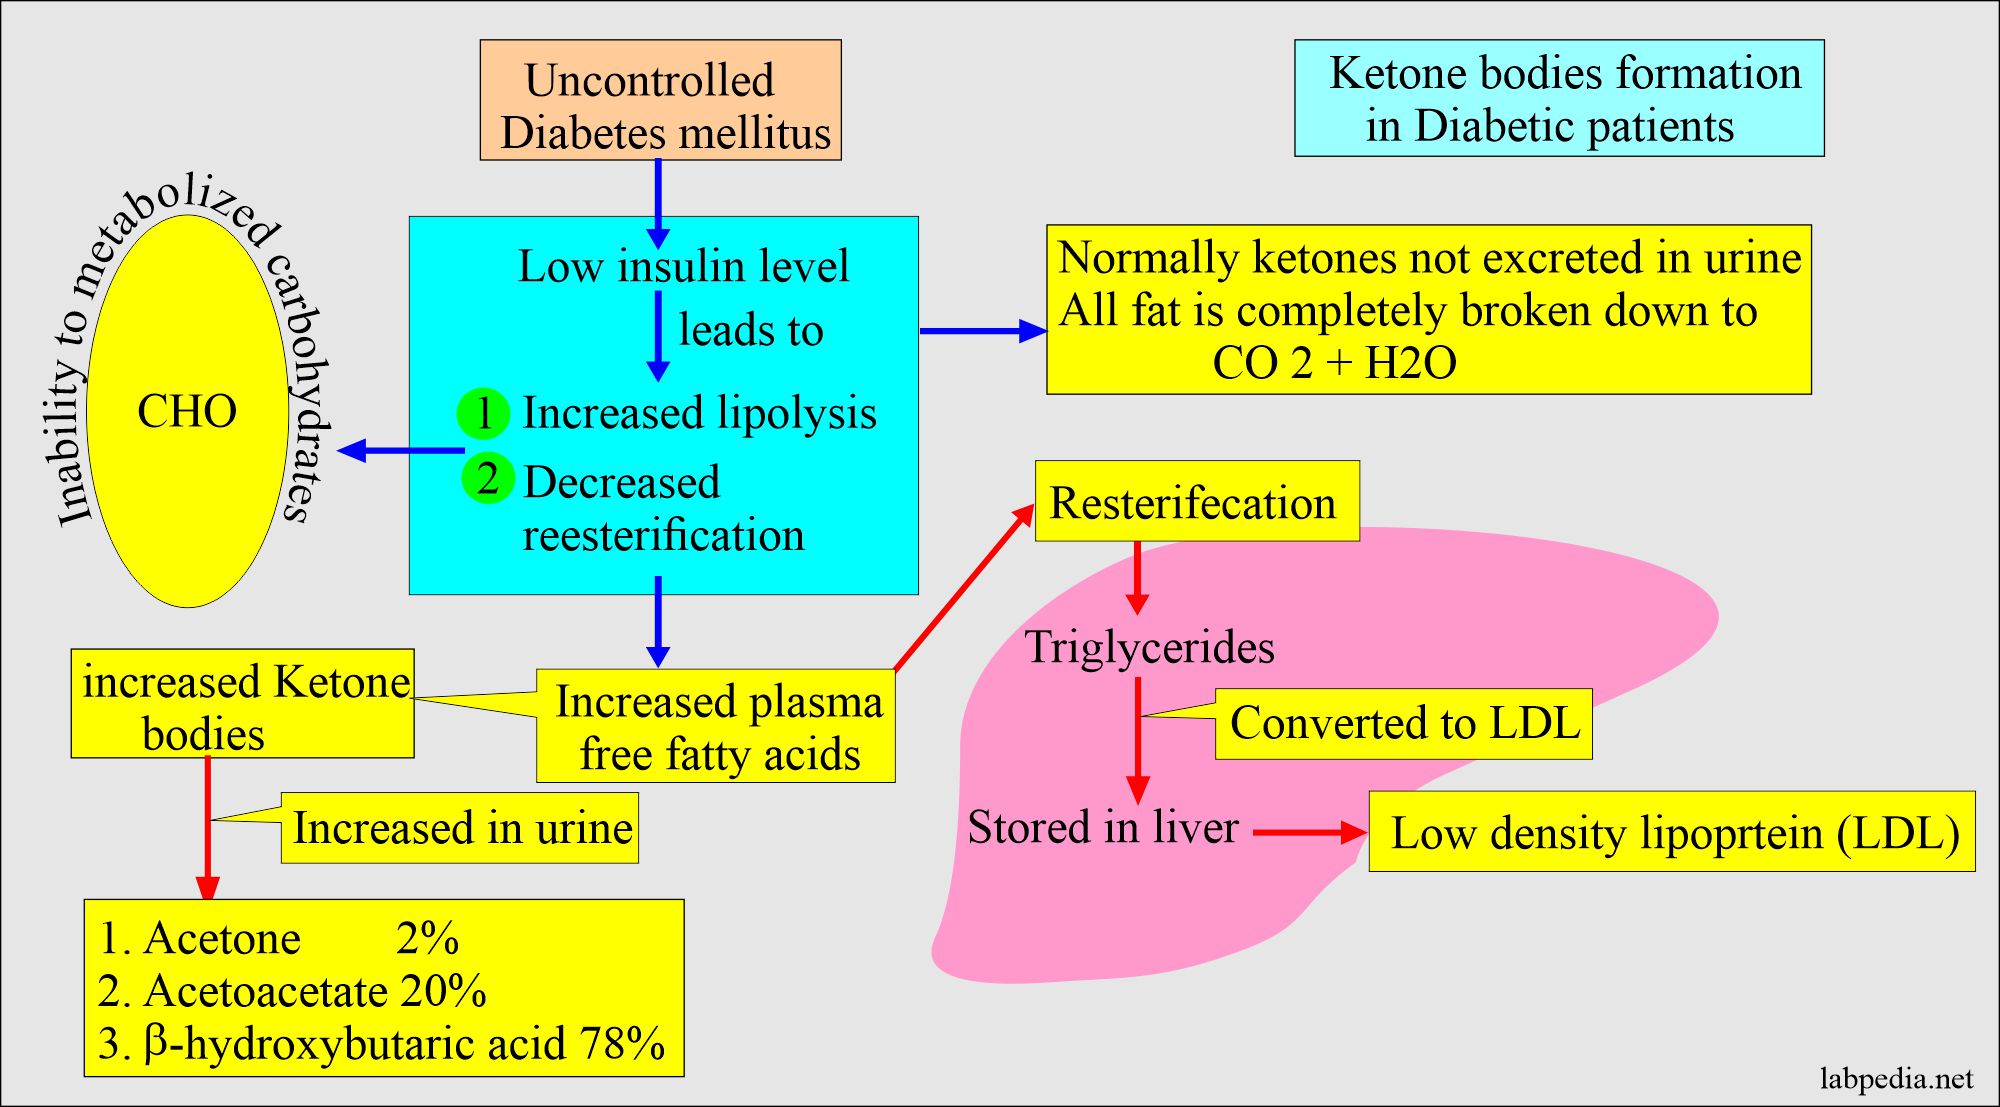 Ketone bodies in diabetic patients